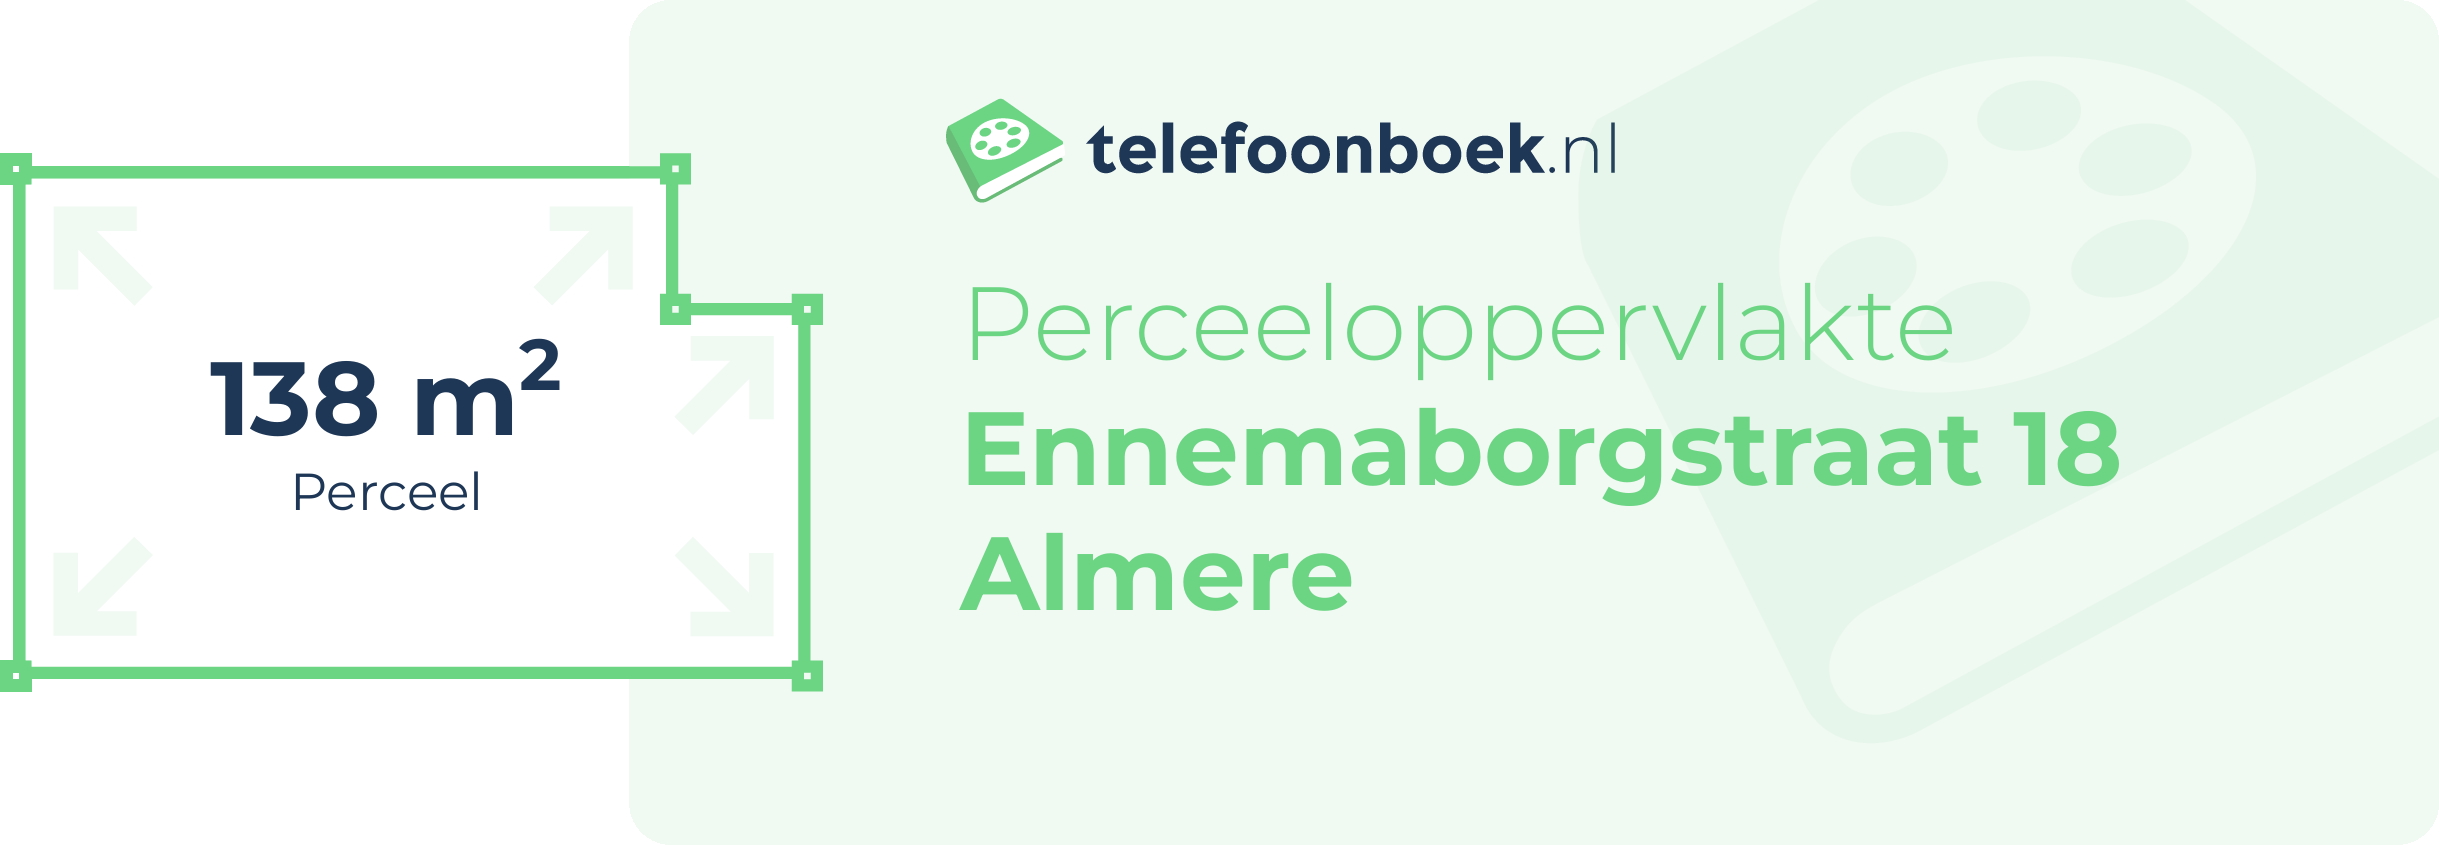 Perceeloppervlakte Ennemaborgstraat 18 Almere